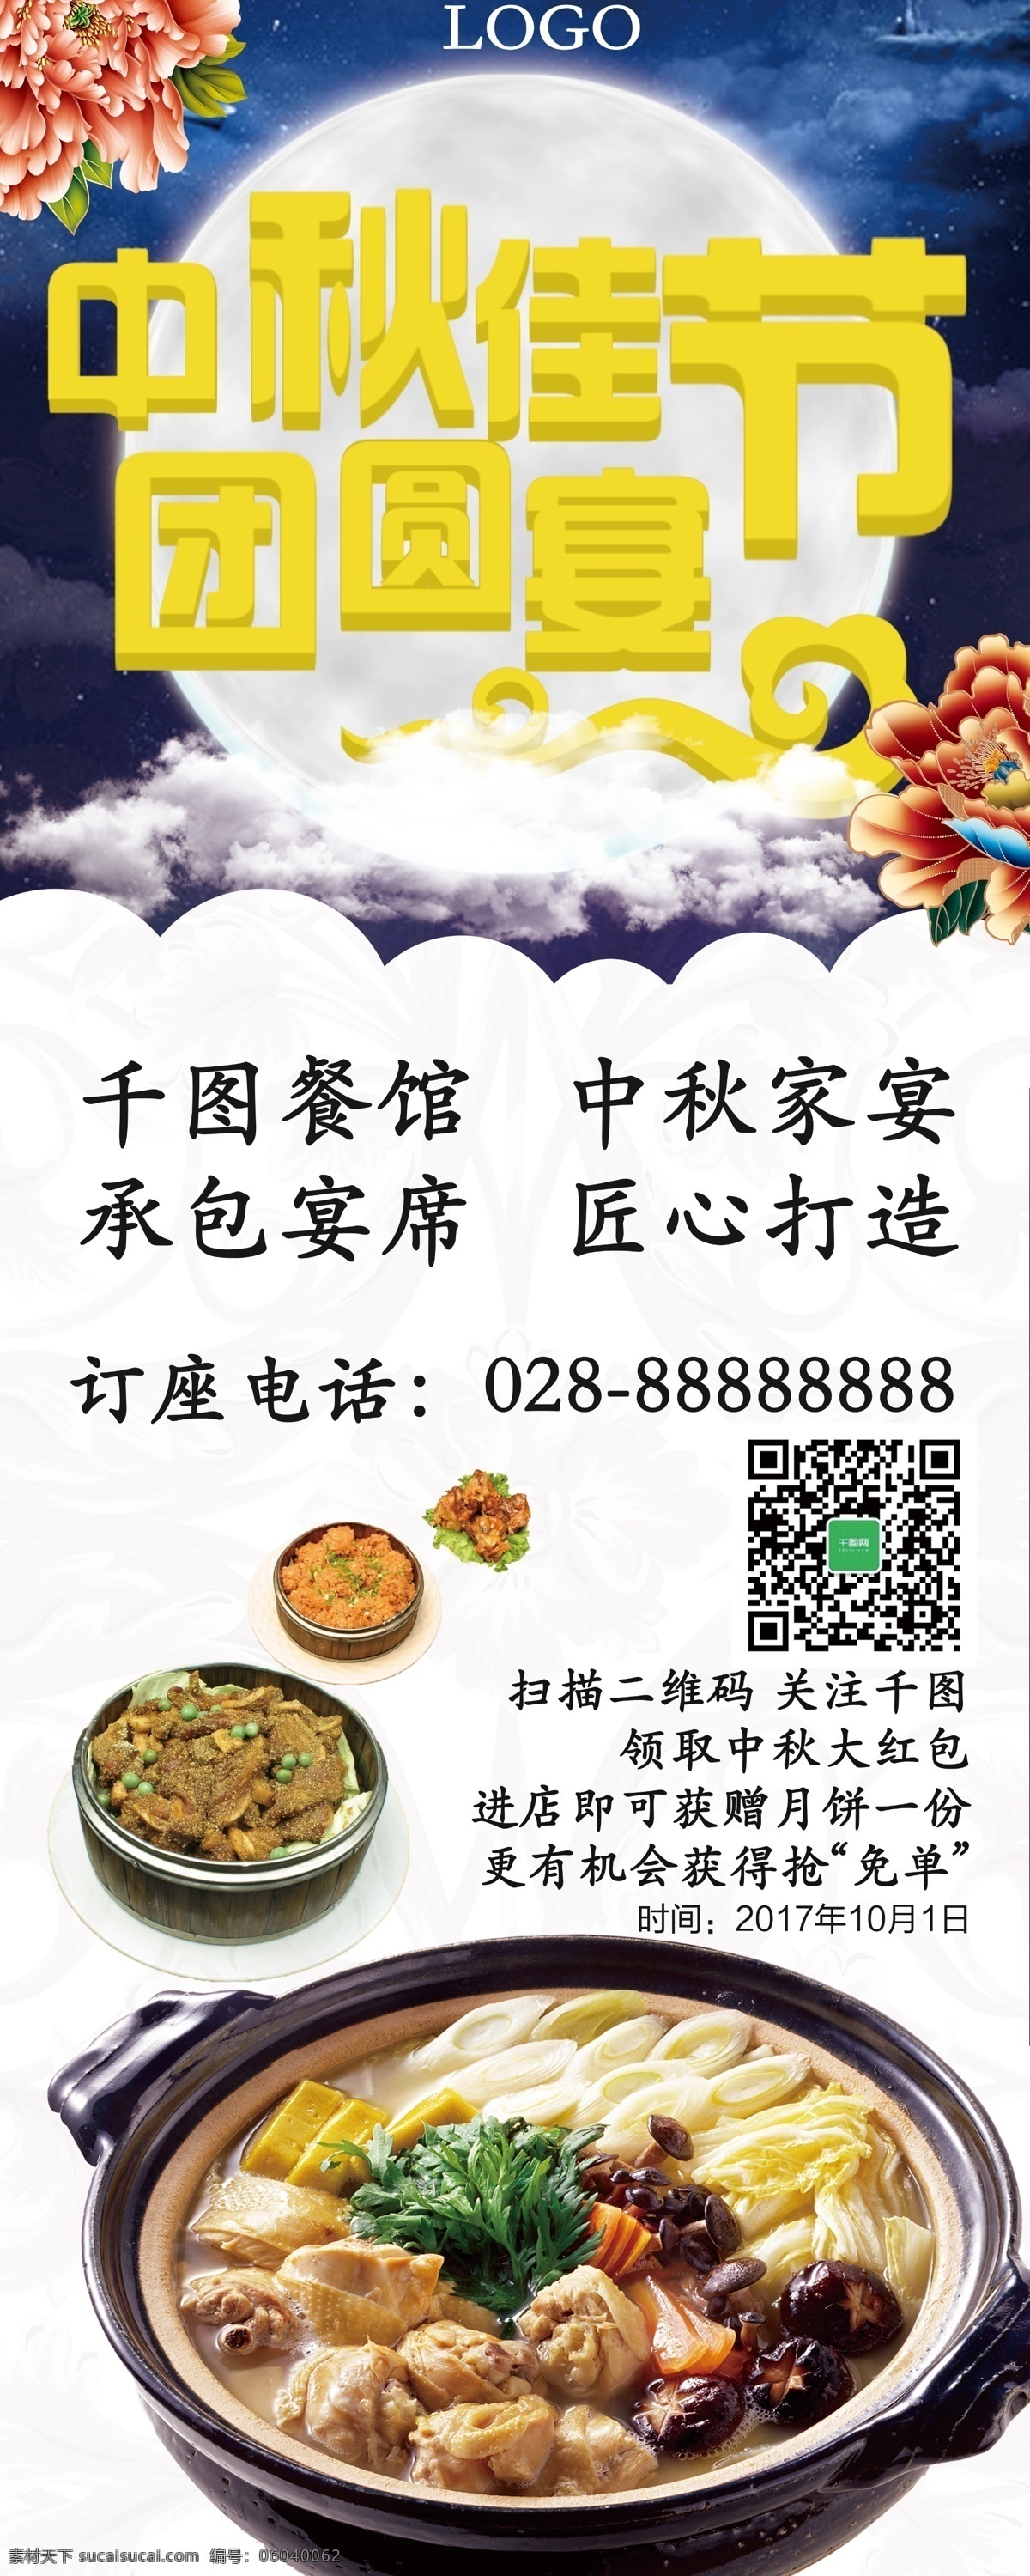 白色 中国 风 牡丹 中秋 餐厅 家宴 活动 宣传 展架 中国风 中餐 美食